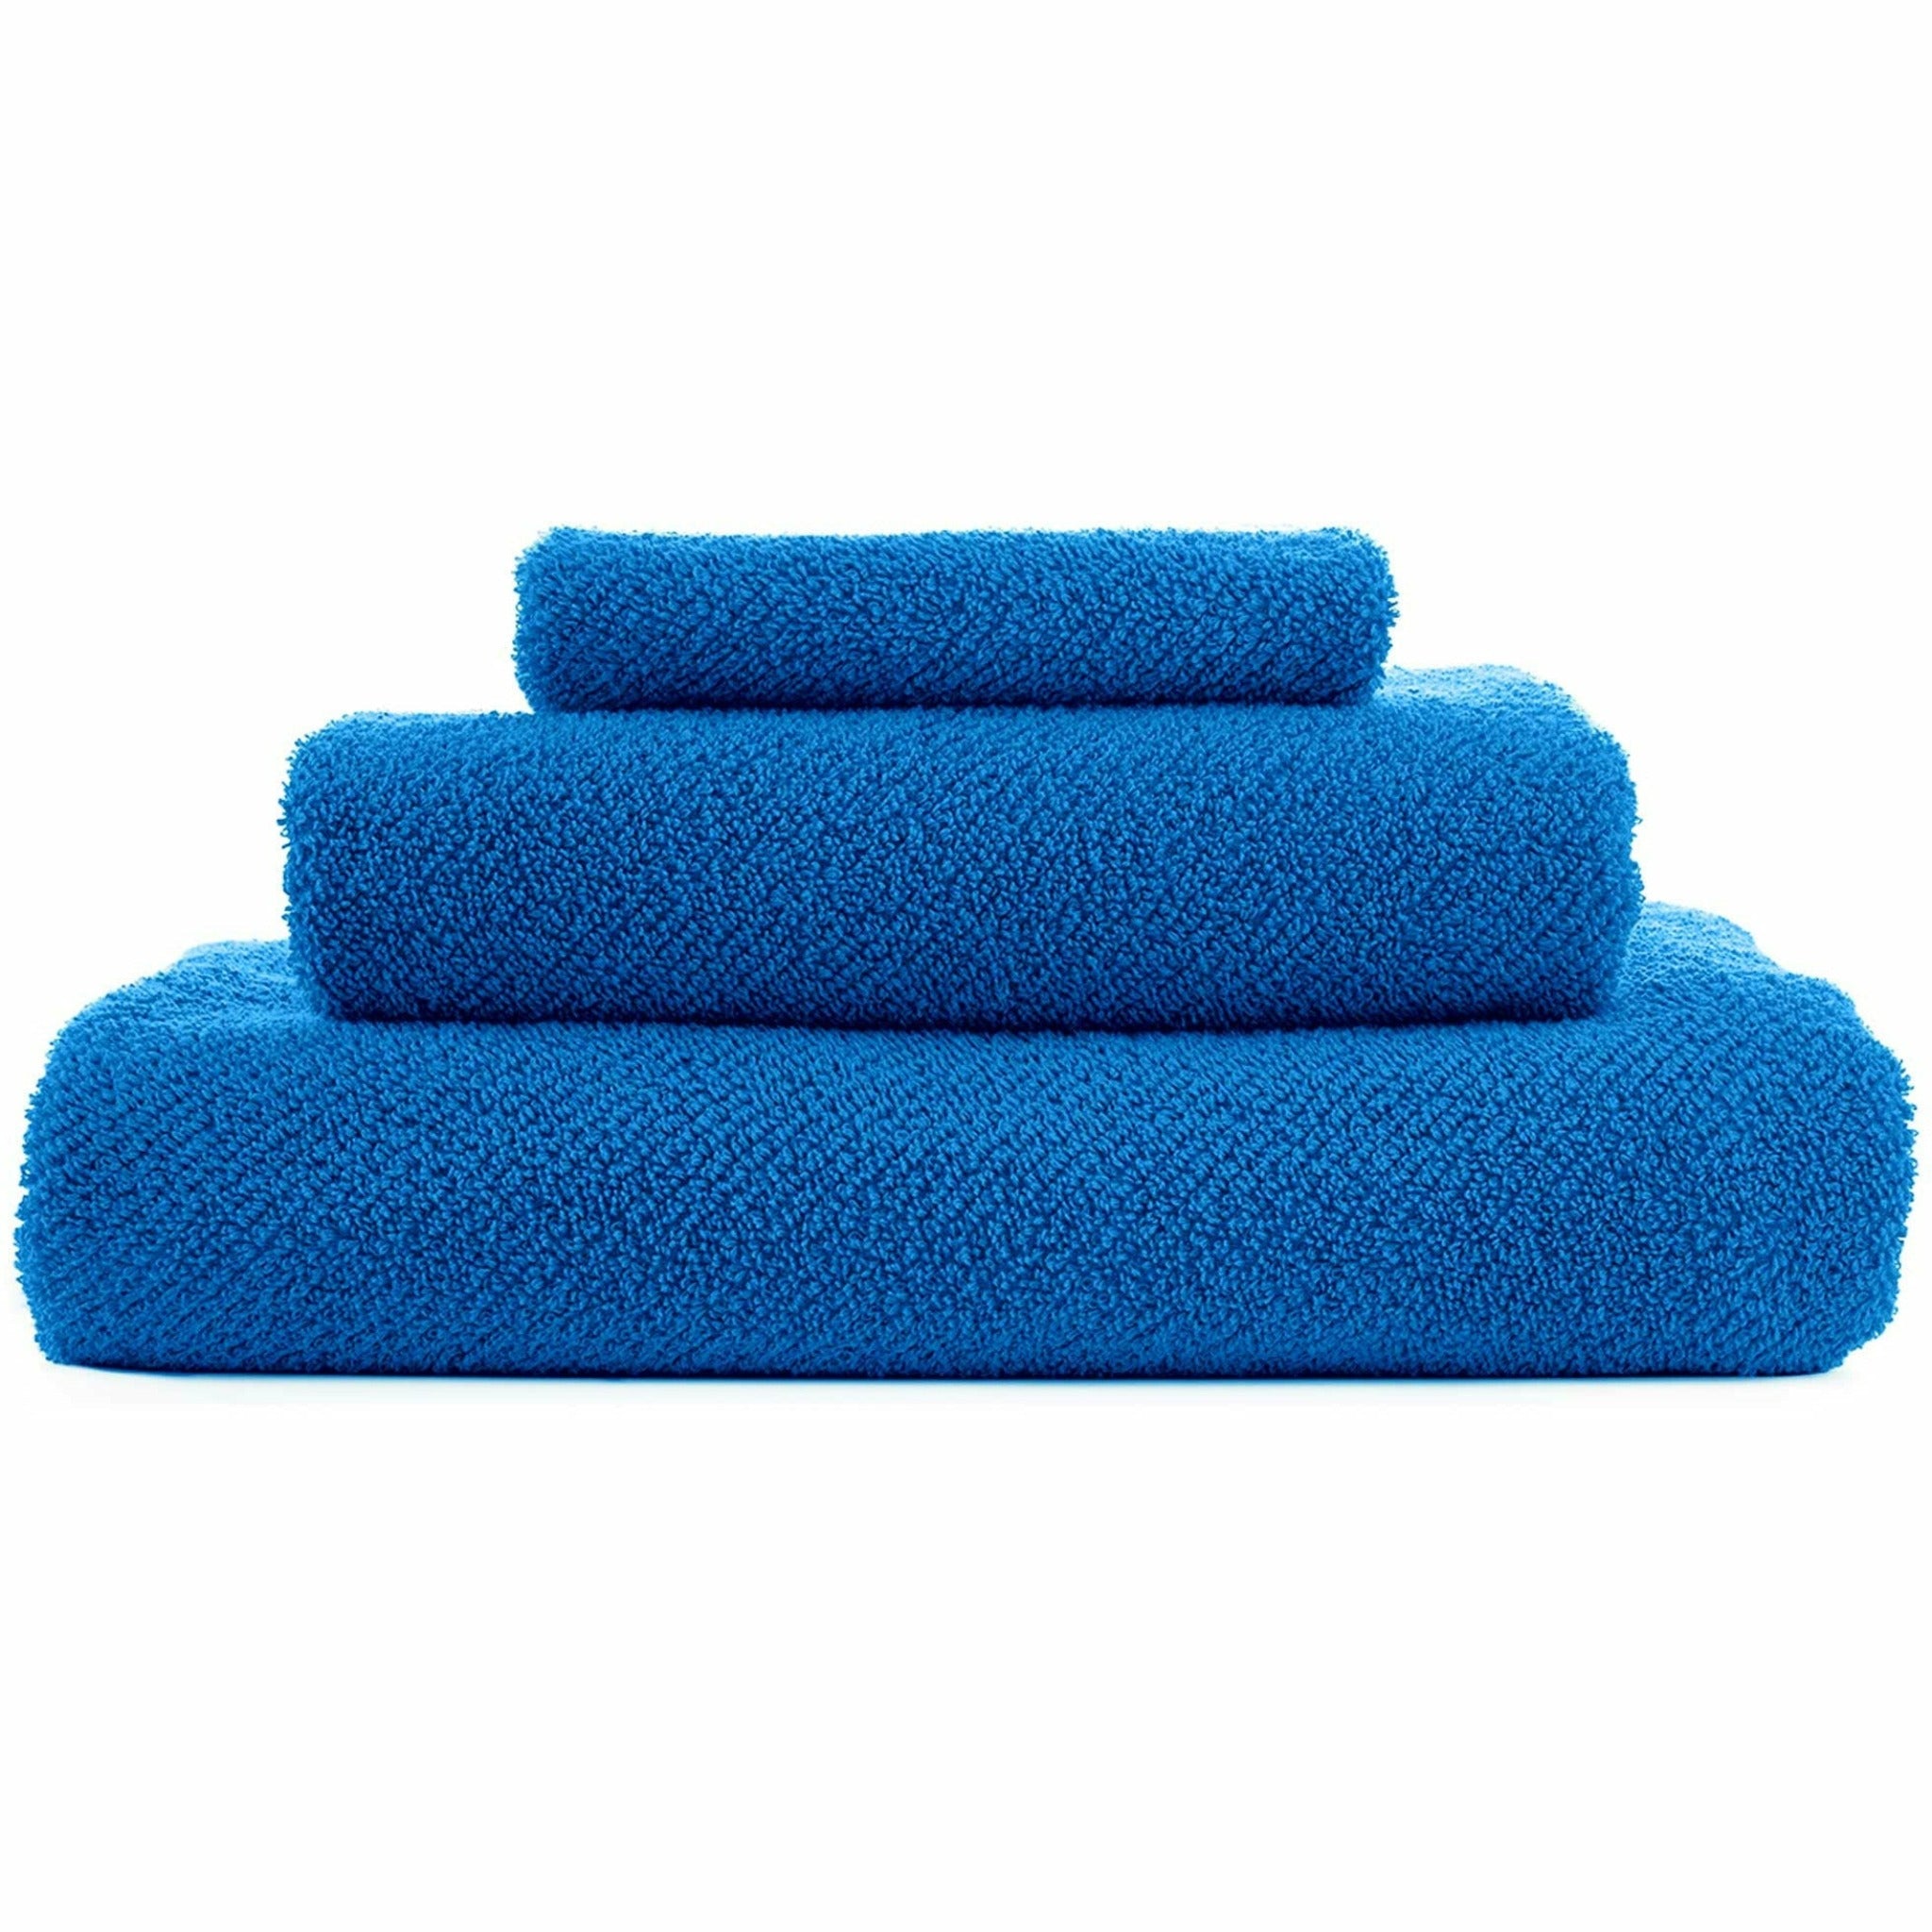 https://flandb.com/cdn/shop/products/Abyss-Twill-Towels-Zanzibar_5000x.jpg?v=1666348061